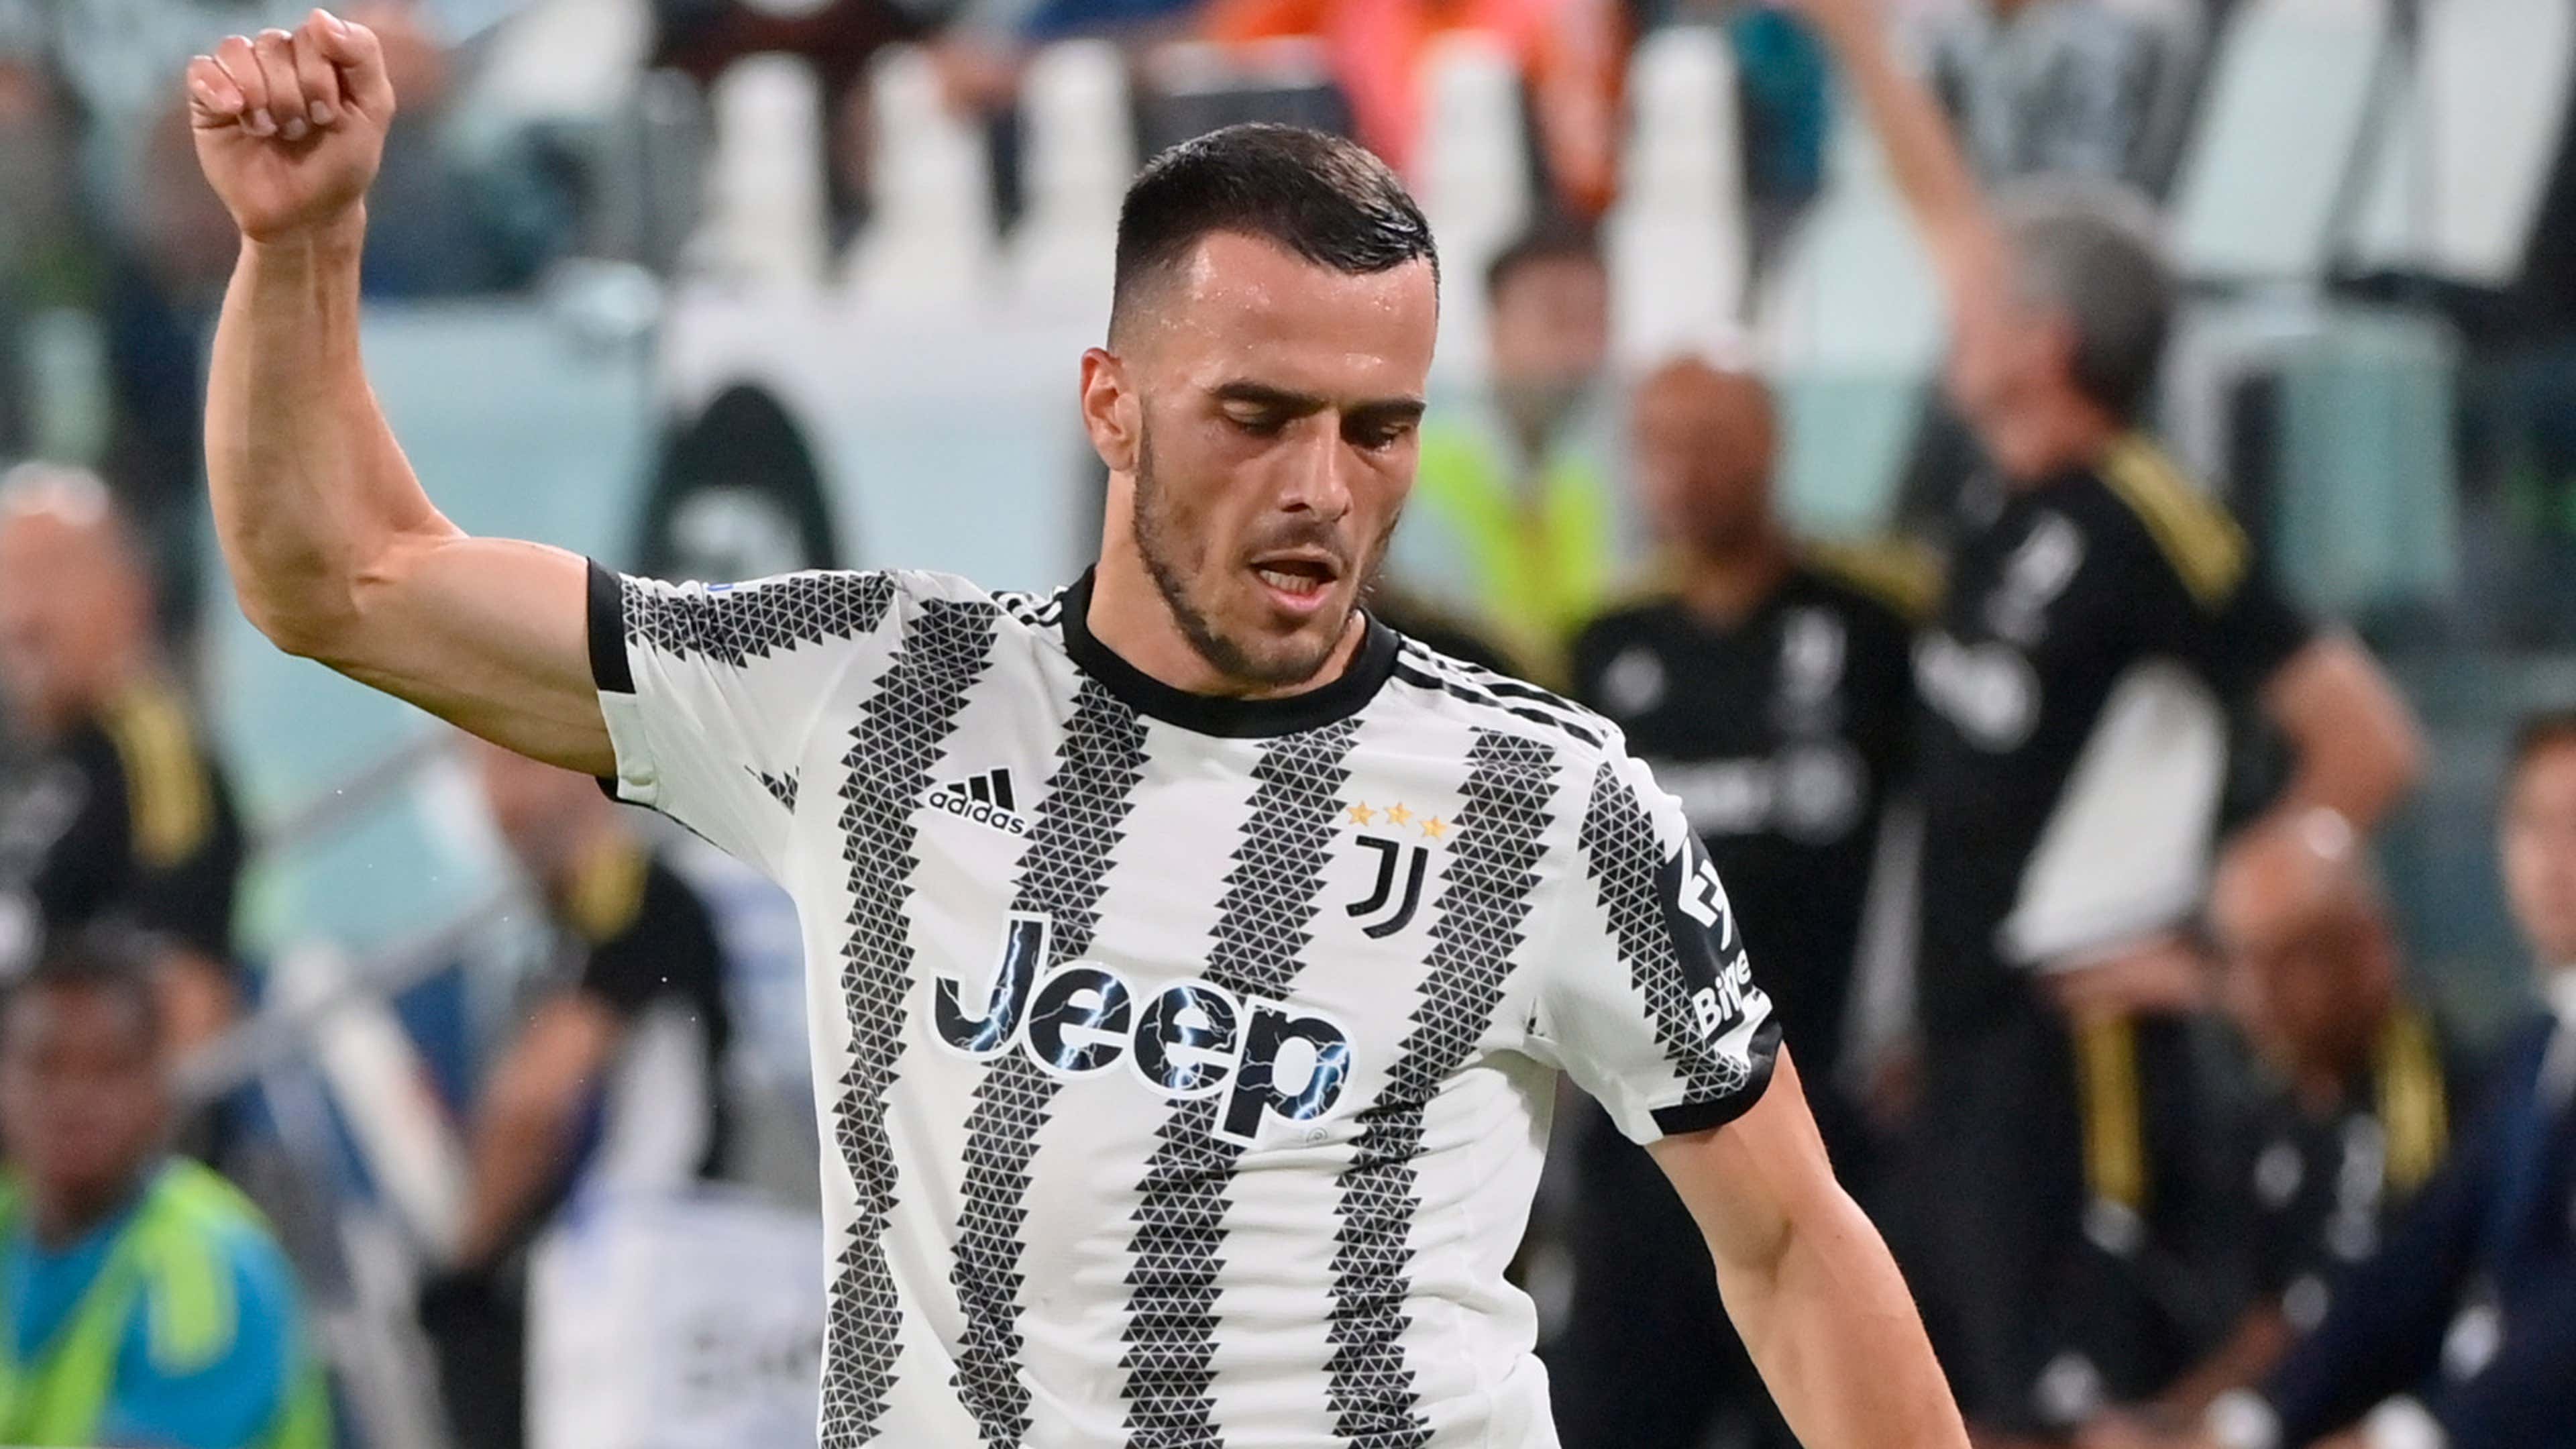 Campeonato Italiano divulga tabela, e eneacampeã Juventus estreia em casa  contra Sampdoria, futebol italiano